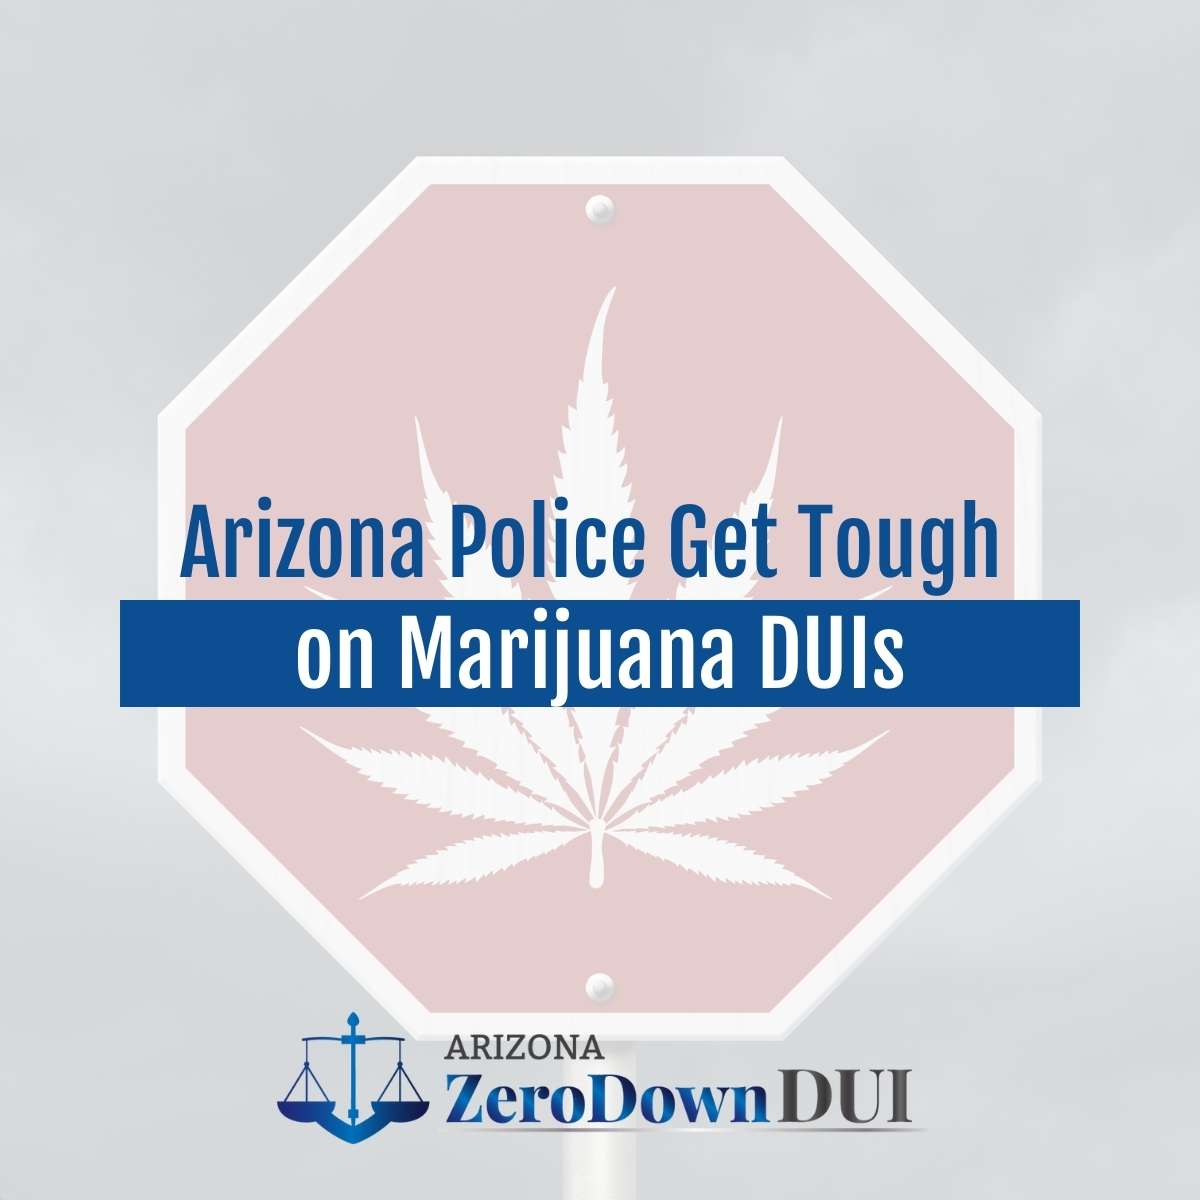 Arizona Police Get Tough on Marijuana DUIs